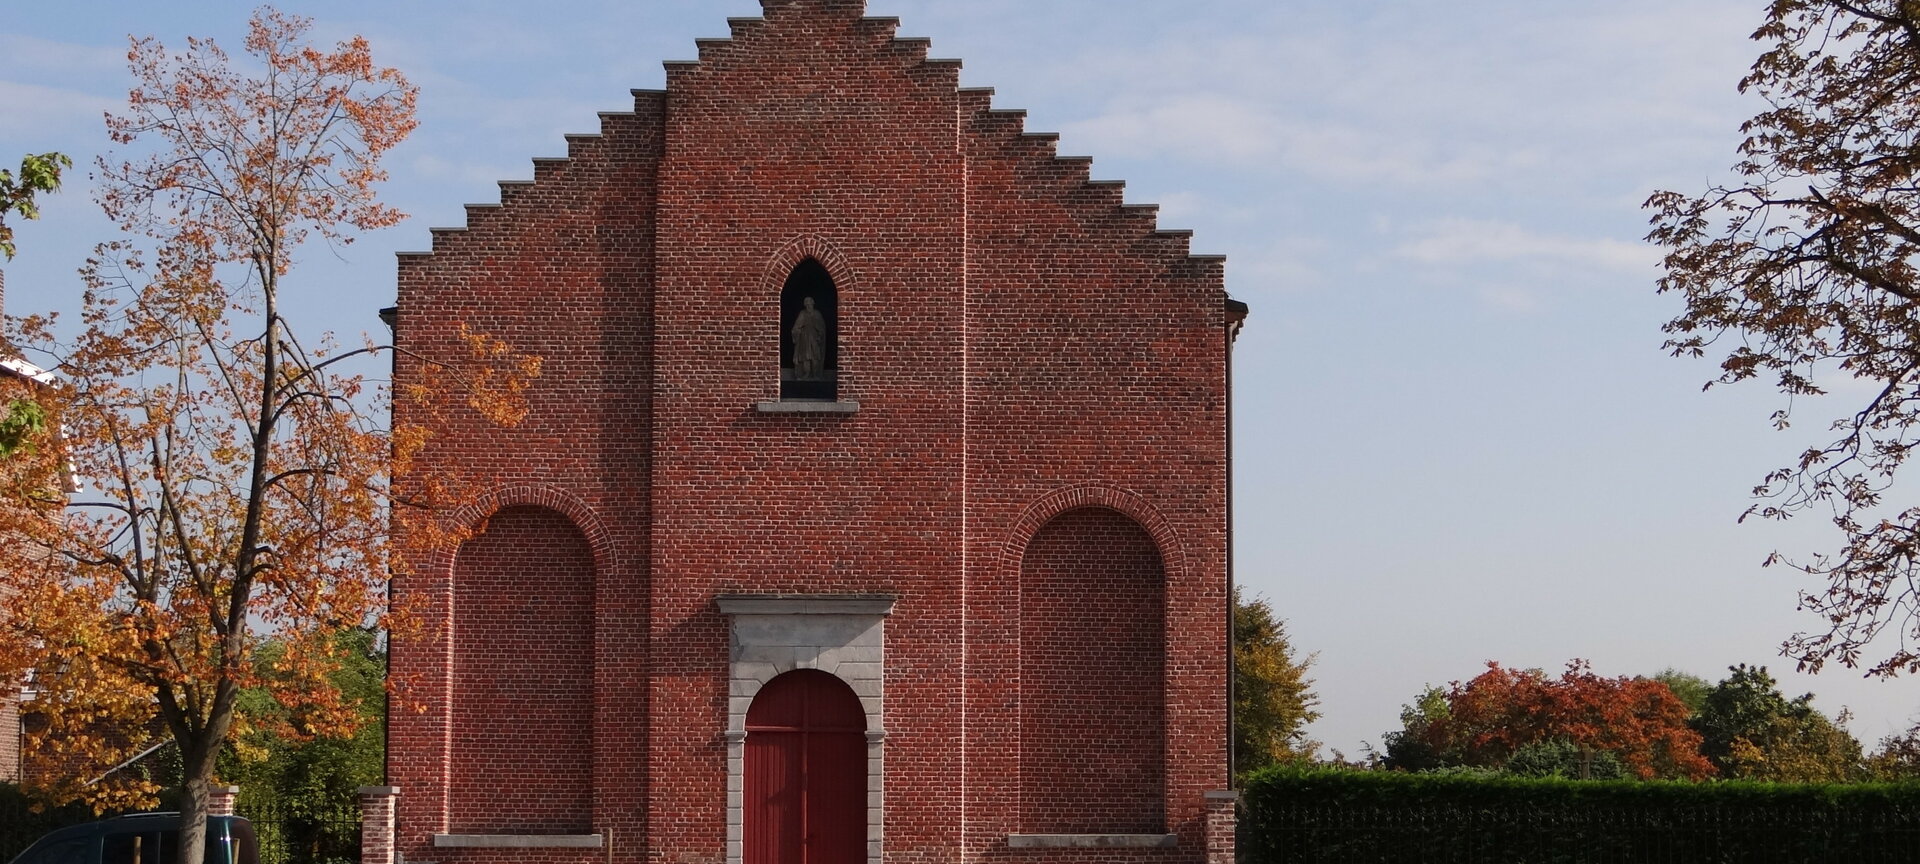 Dorpsplein Ulbeek - Overdekte begraafplaats in voormalige Sint-Rochuskerk gelegen aan Dorpsplein in Ulbeek.